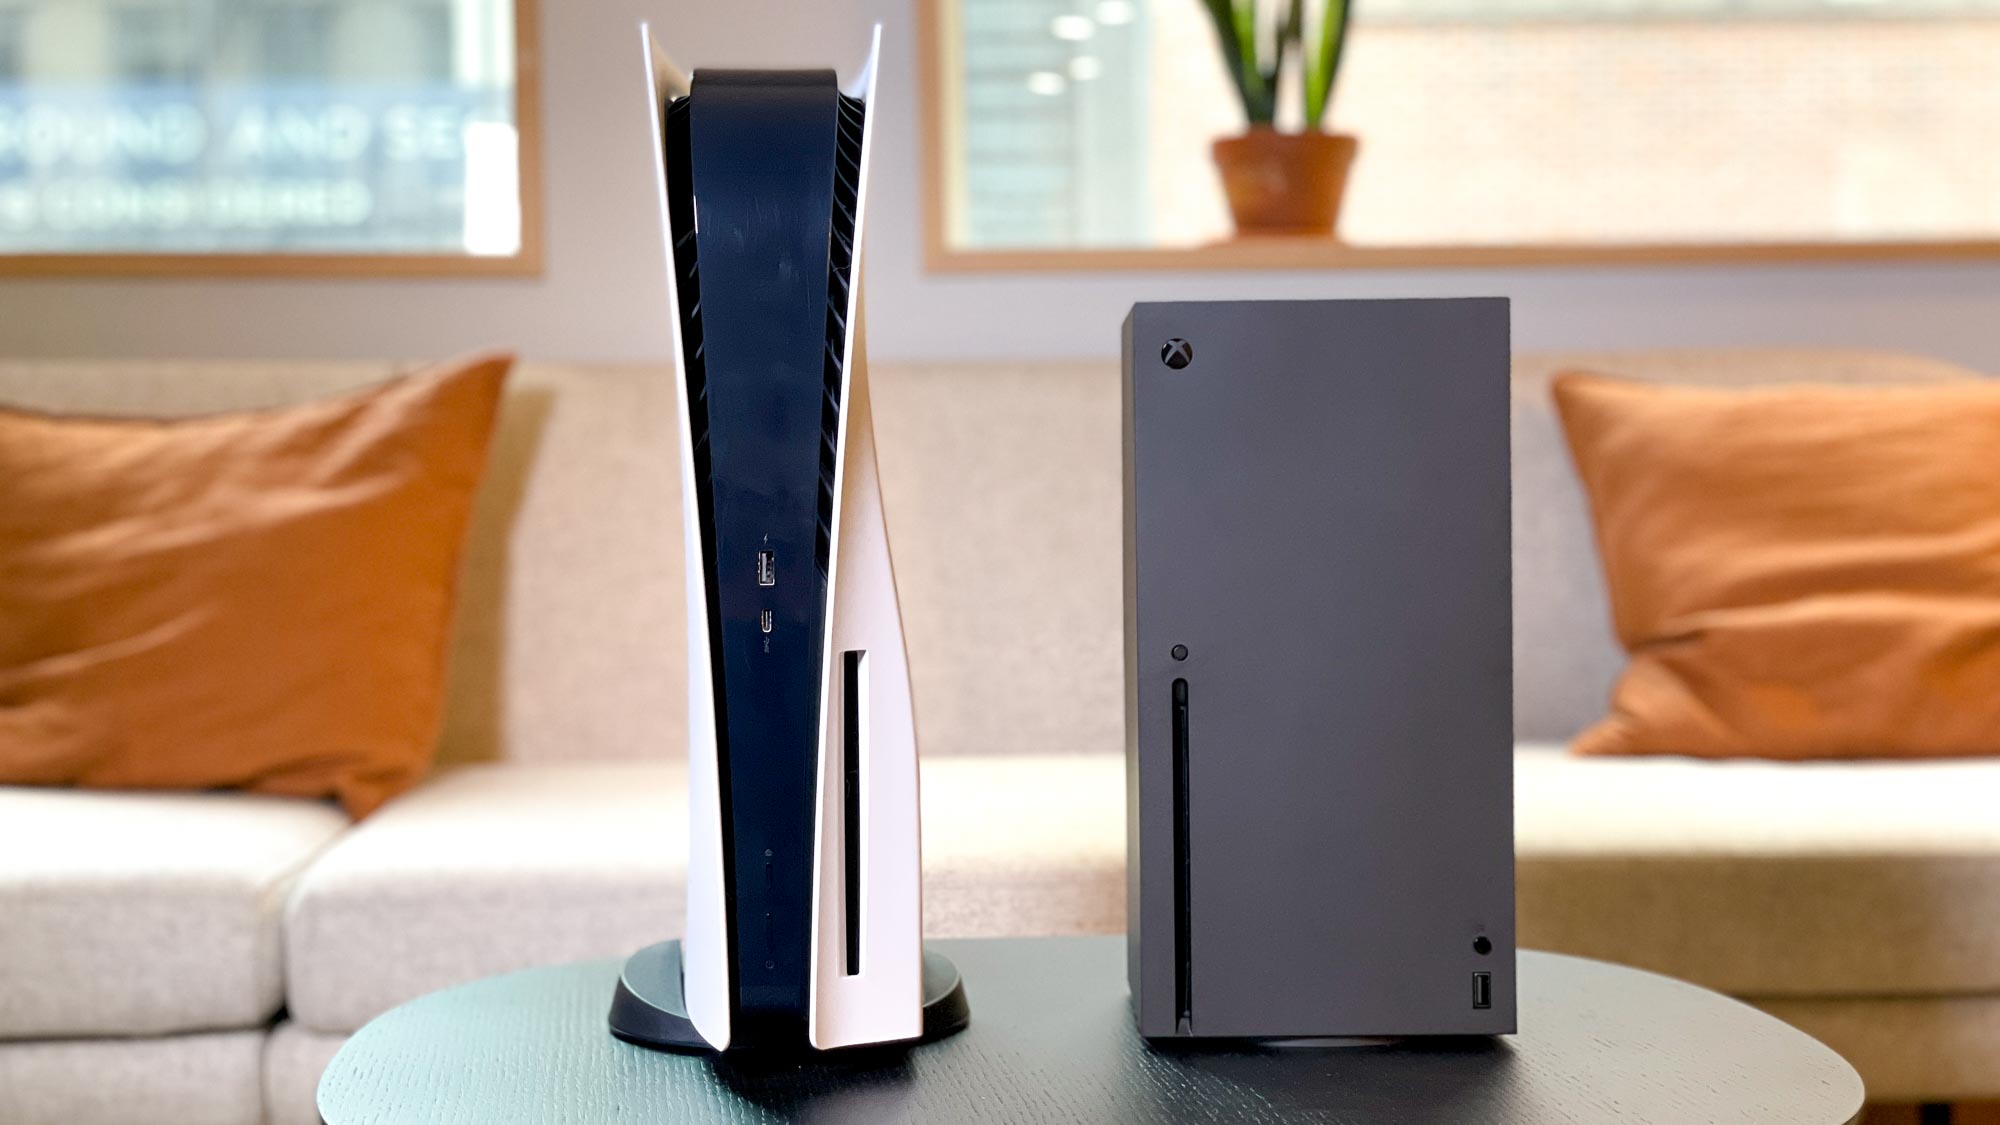 Microsoft a opté pour la sobriété dans le design de la Series X avec son look s'apparentant à un petit PC